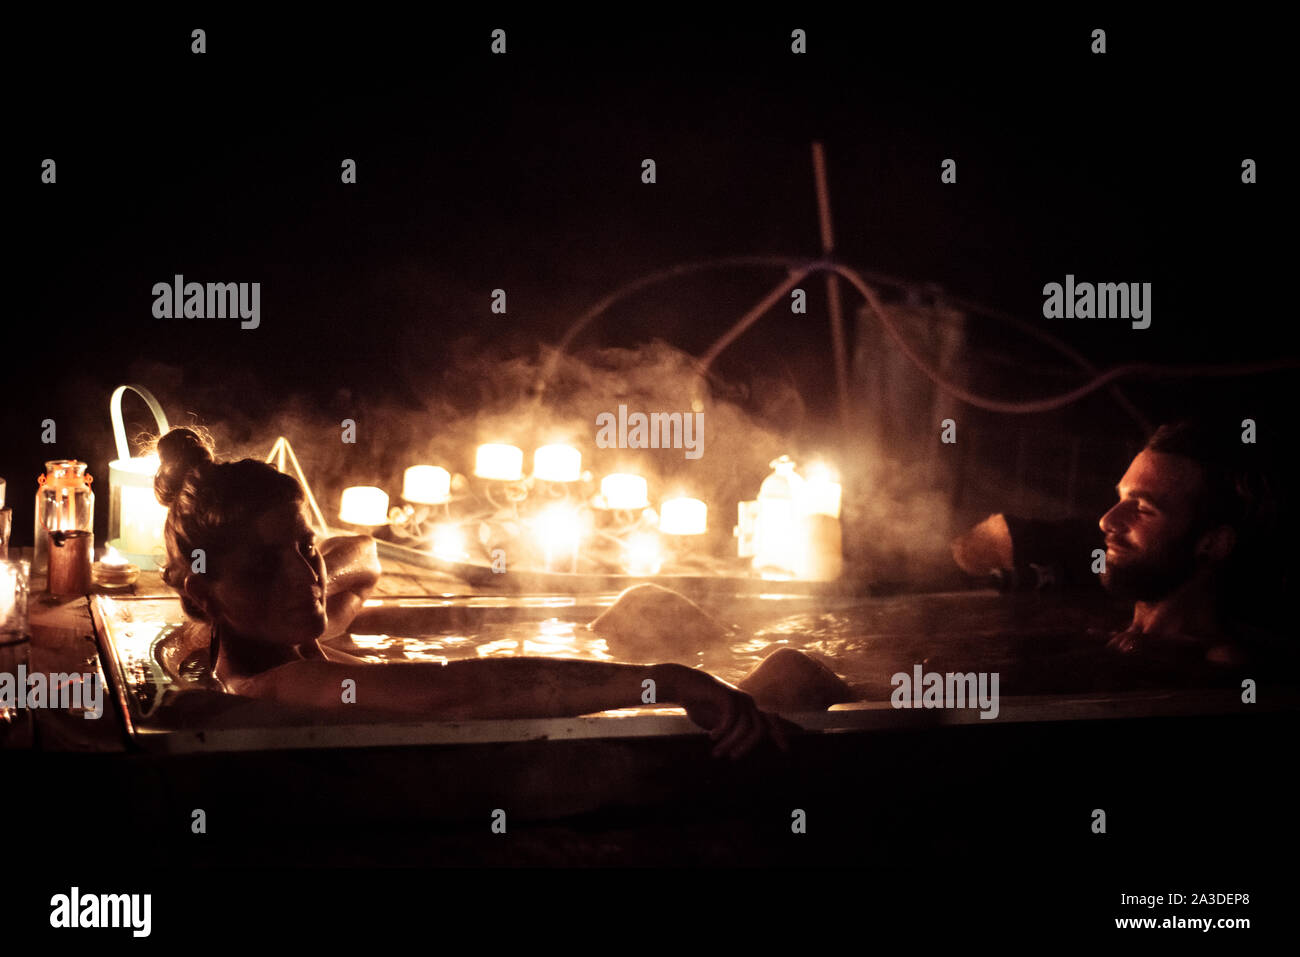 Coppia giovane sedersi nella vasca calda all'aperto durante la notte con romantiche candele Foto Stock